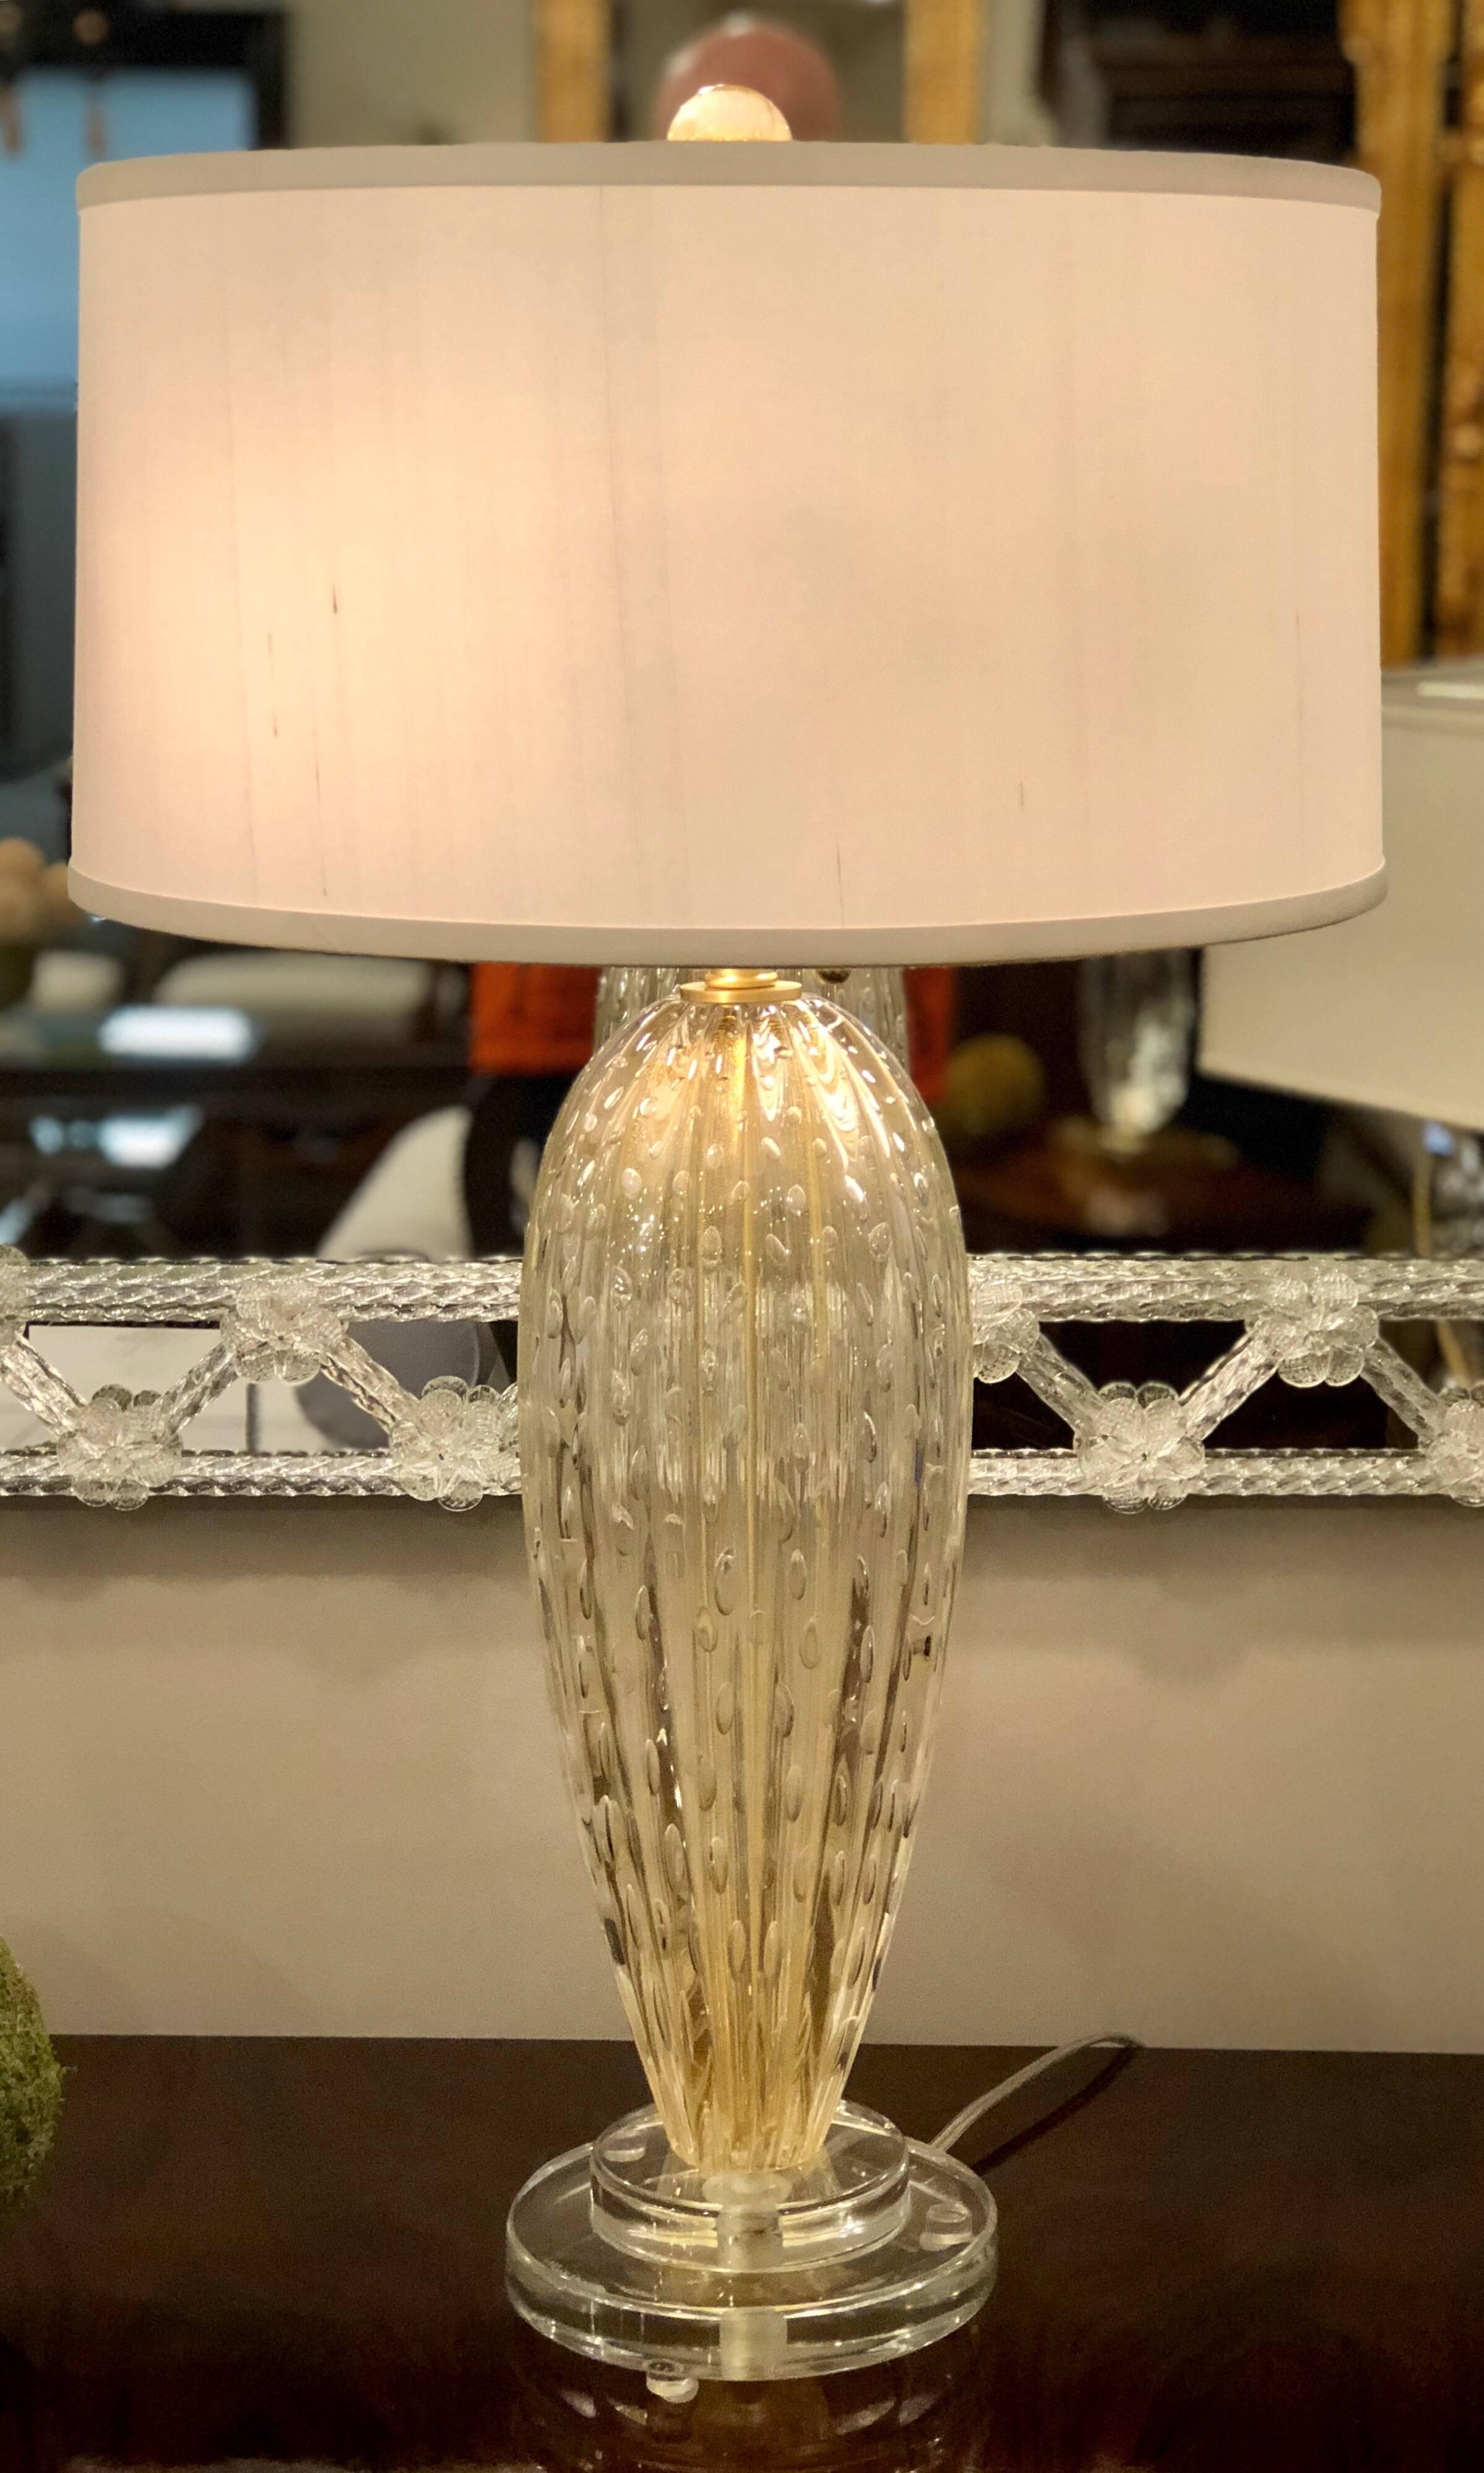 Elegantes Paar italienischer Tischlampen aus klarem und goldenem Murano / venezianischem Glas im Mid-Century Modern Stil.

Die Stücke werden mit der Murano-Blasenglastechnik 